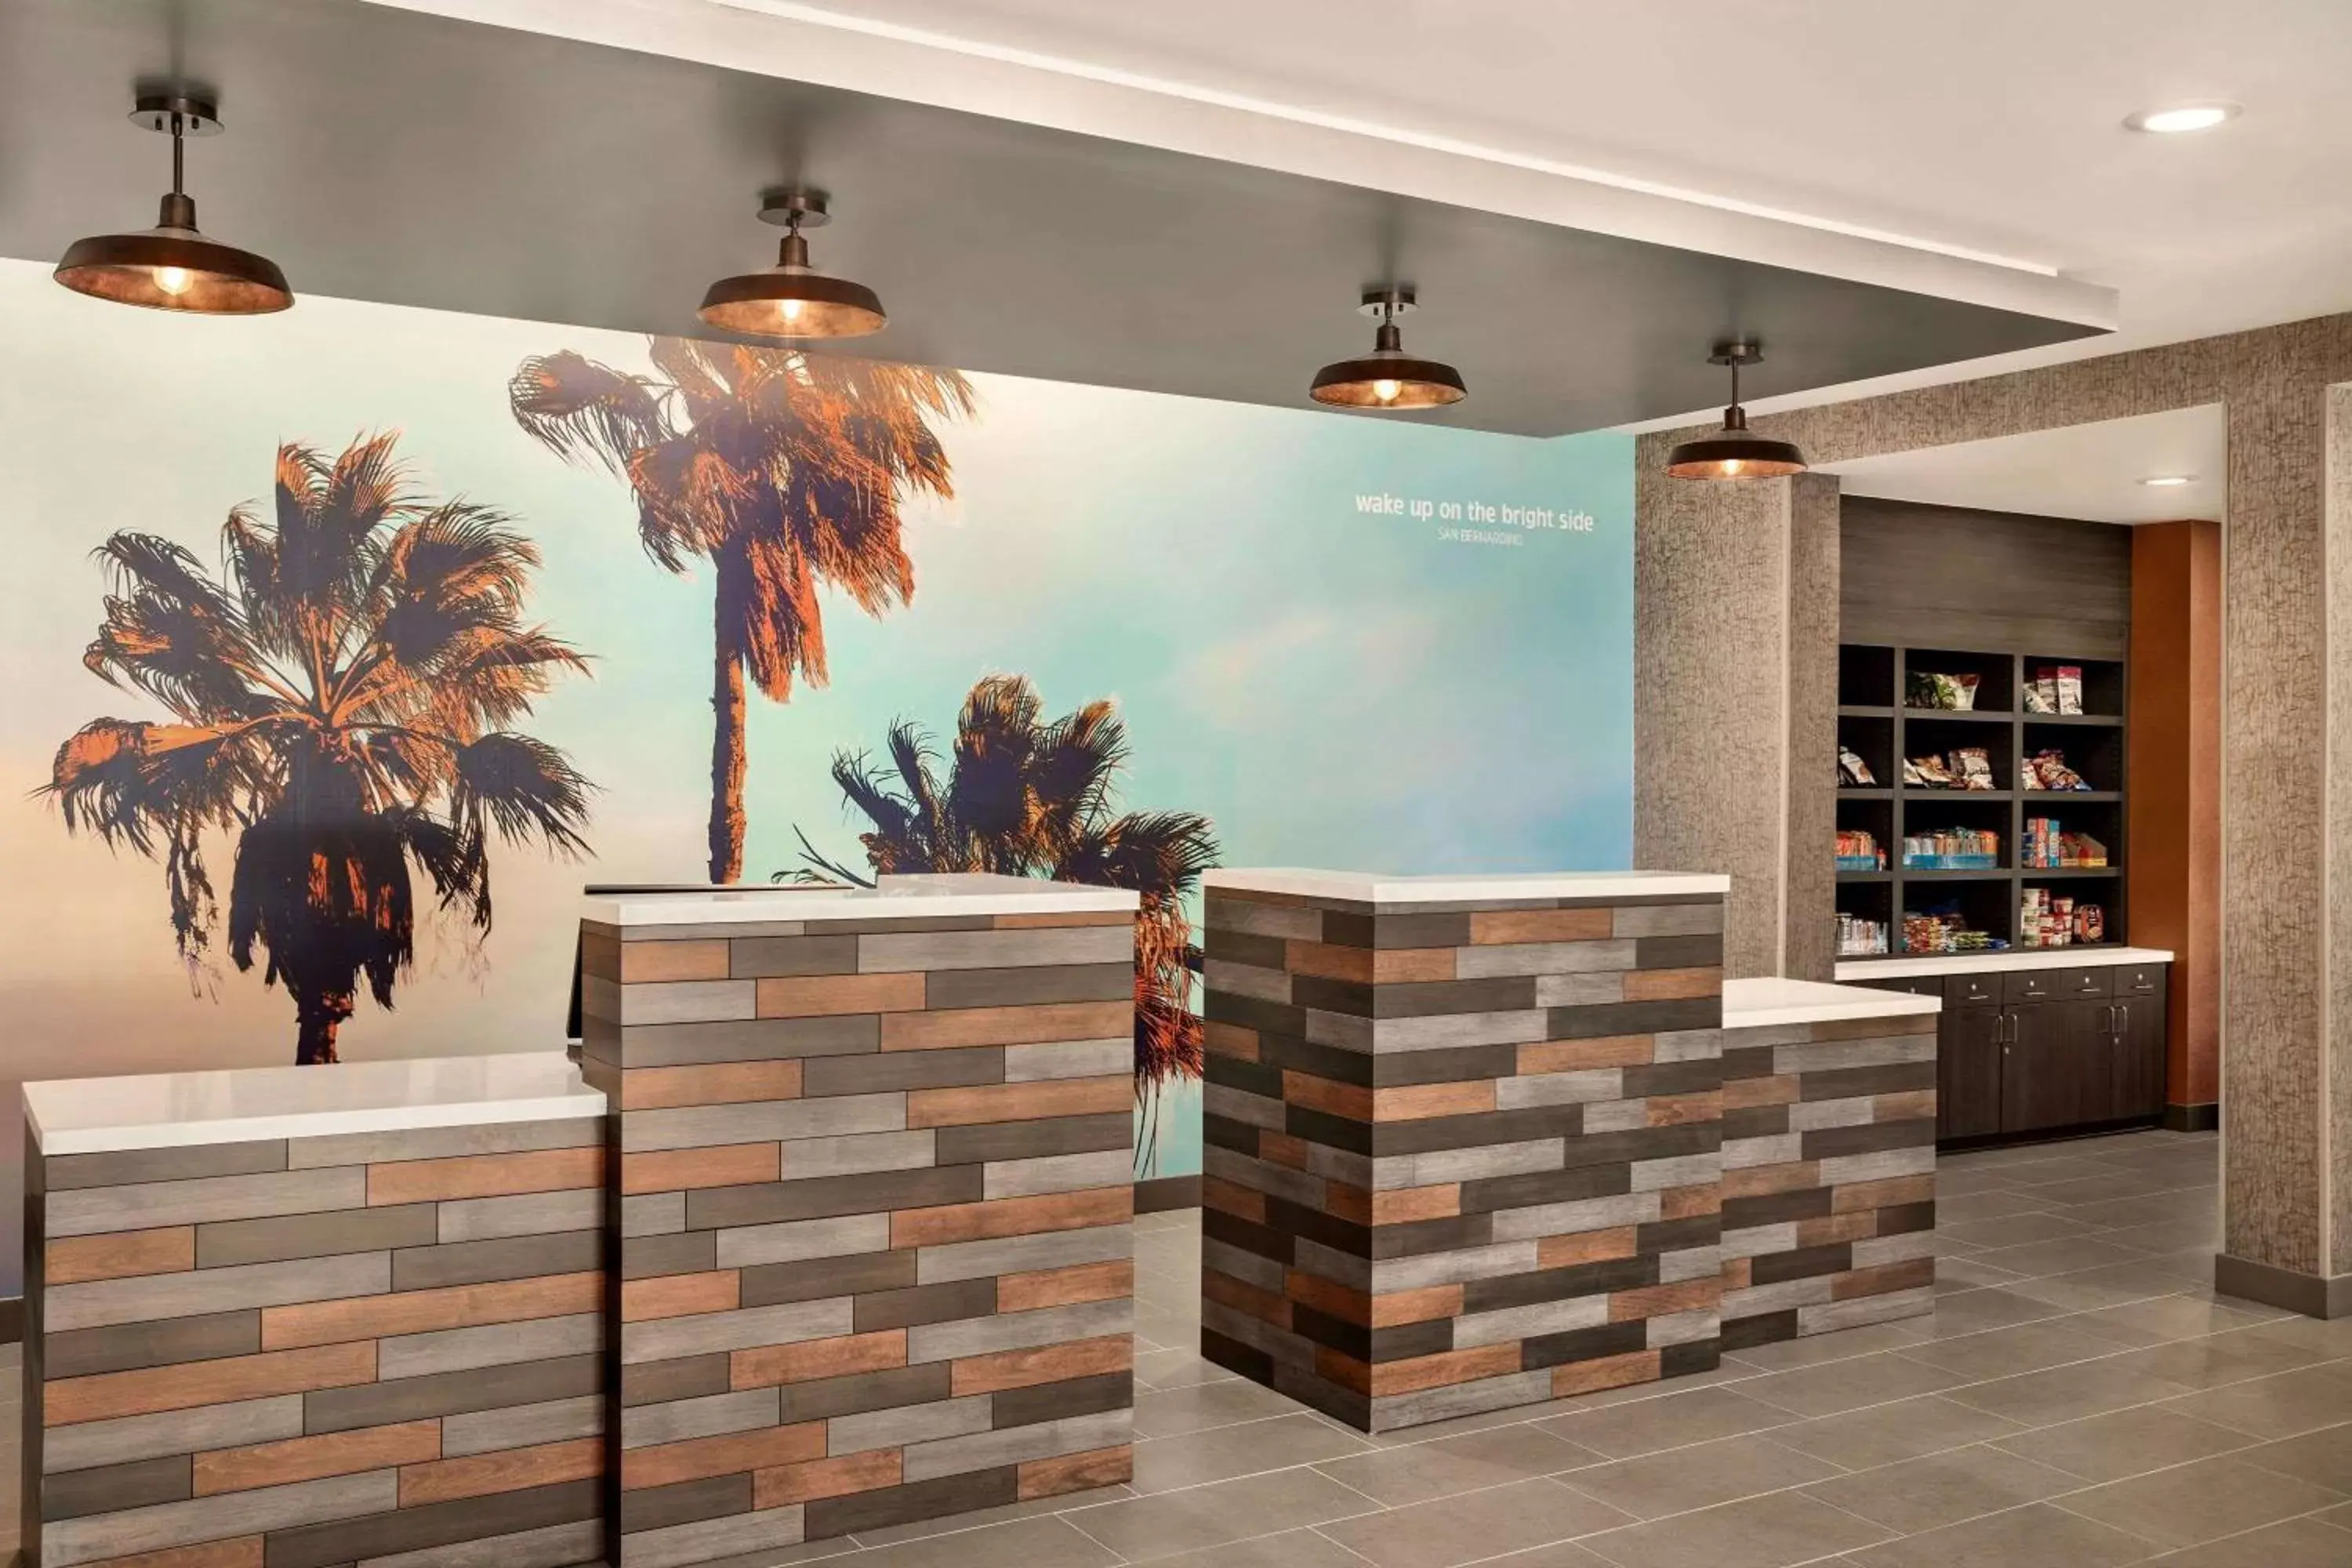 Lobby or reception in La Quinta Inn & Suites by Wyndham San Bernardino